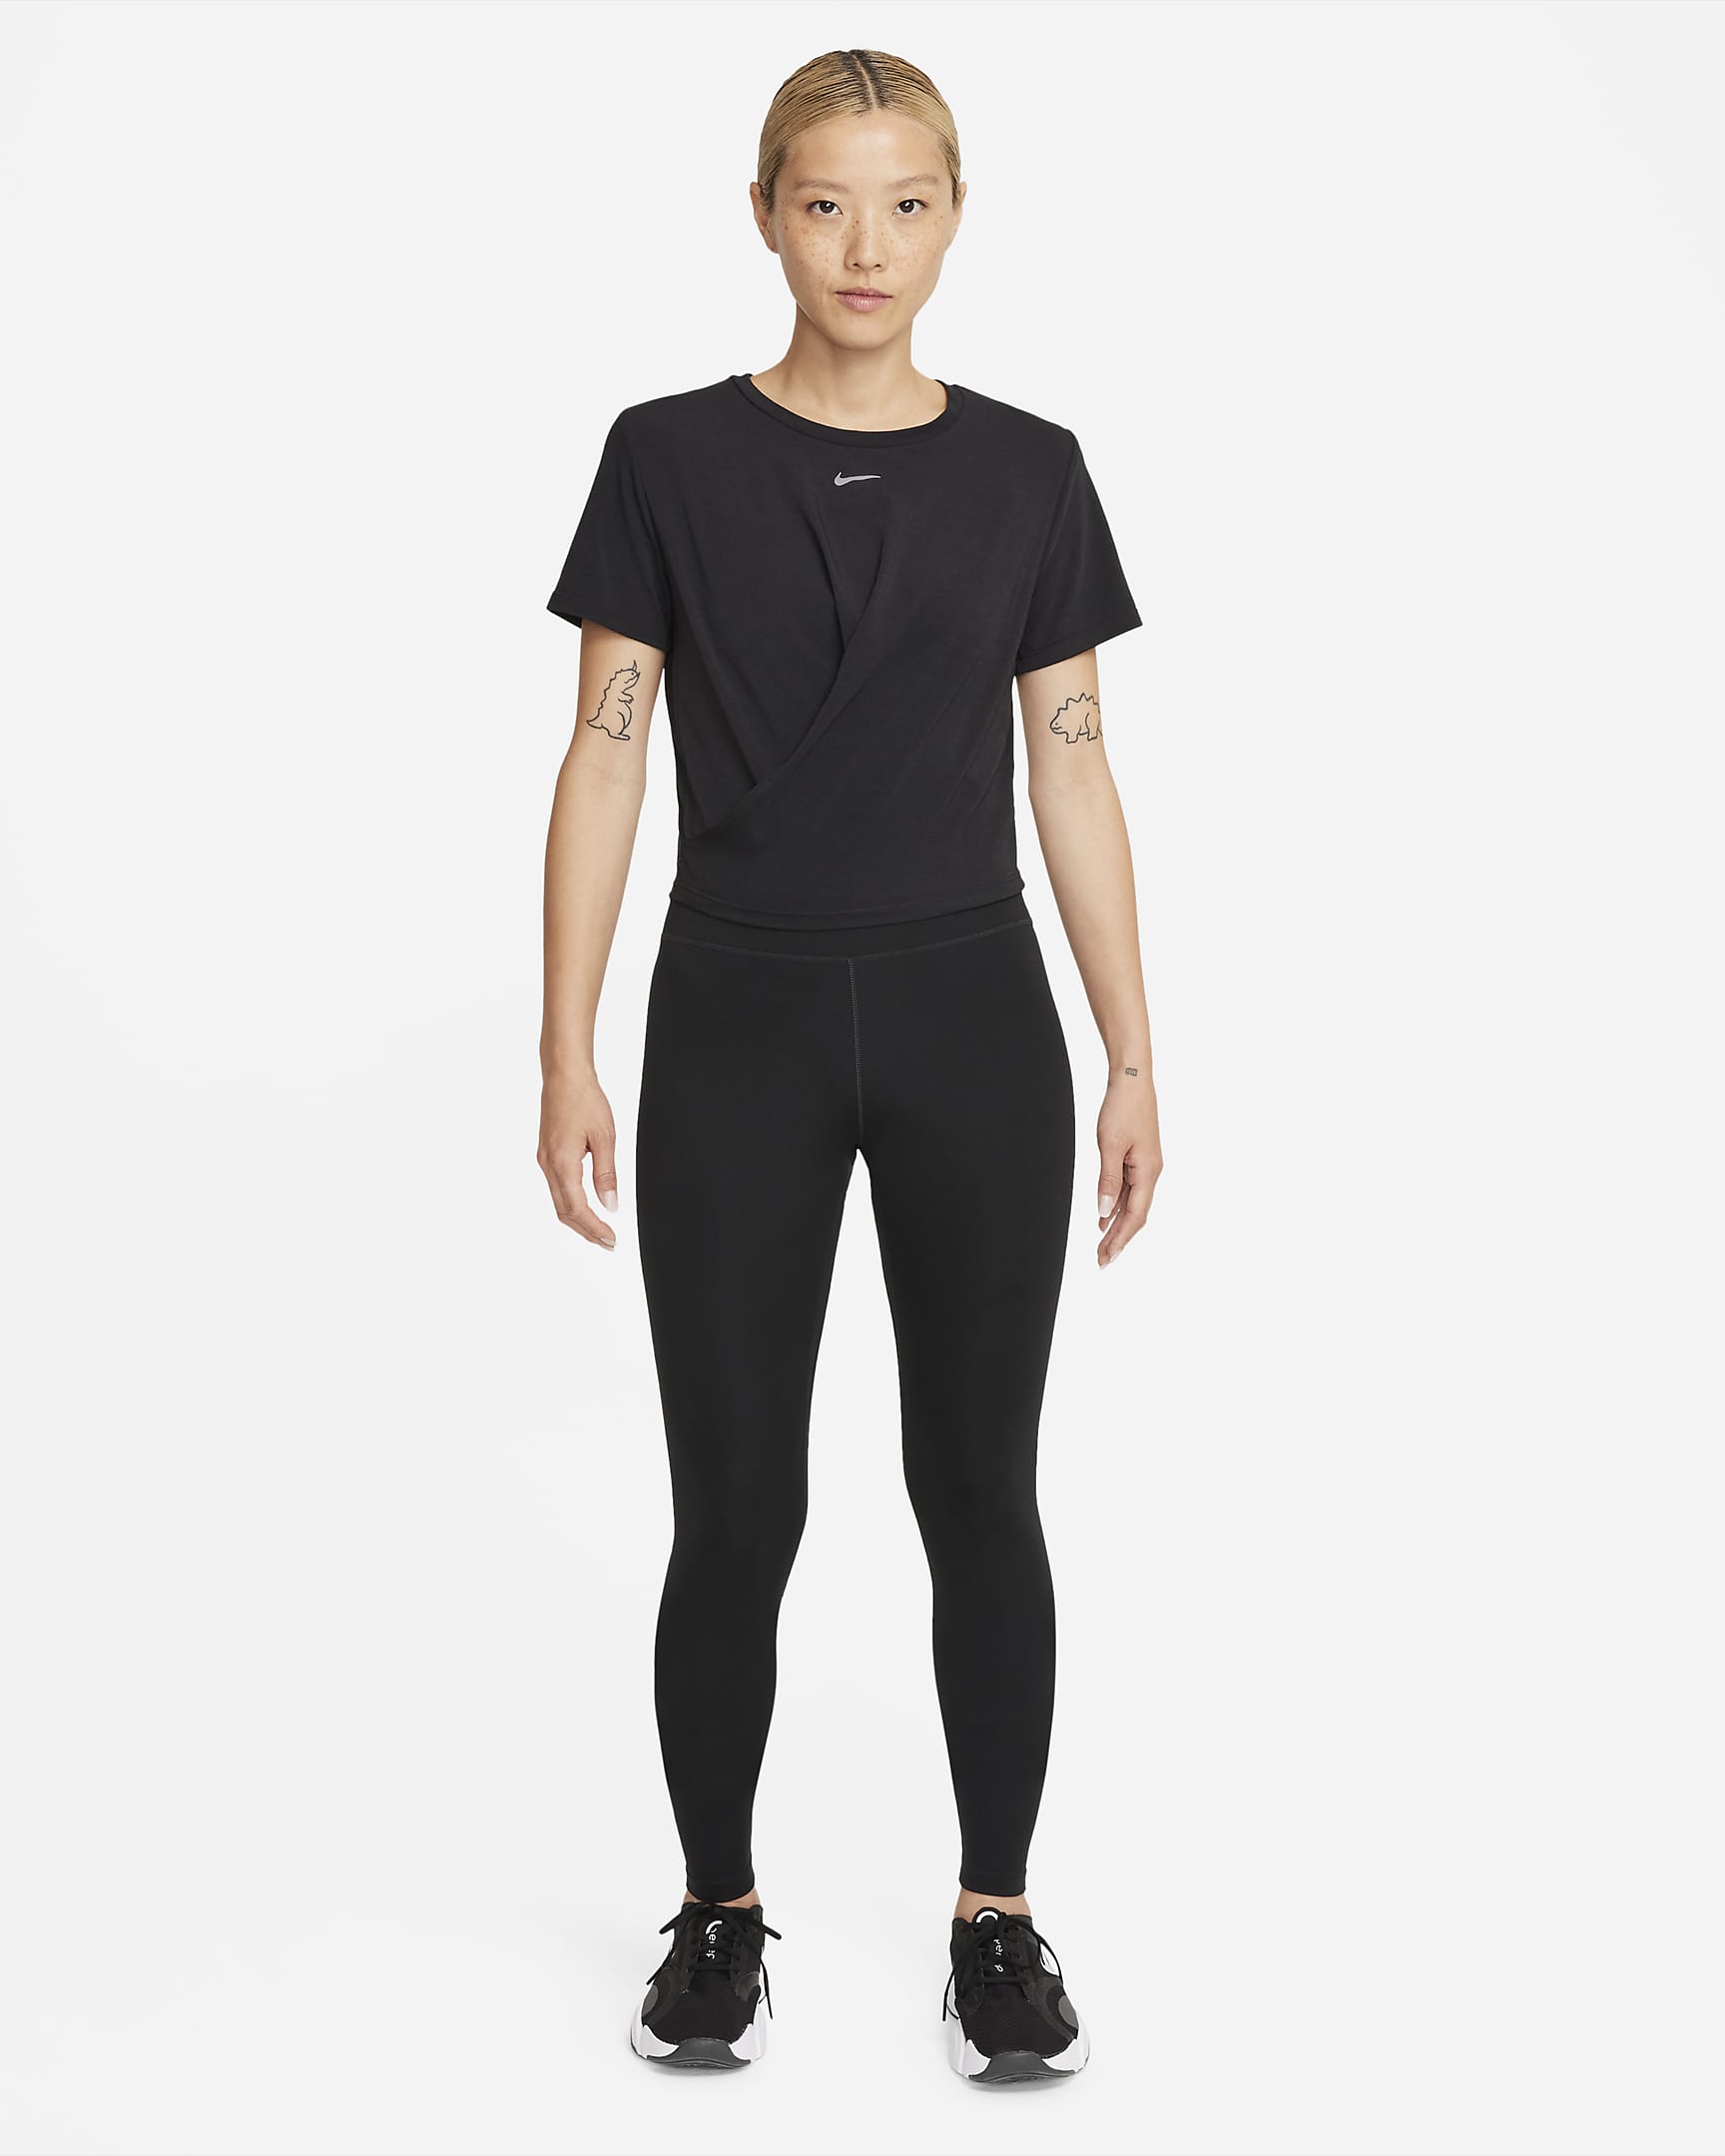 Nike Dri-FIT One Luxe Women's Twist Standard Fit Short-Sleeve Top. Nike ID